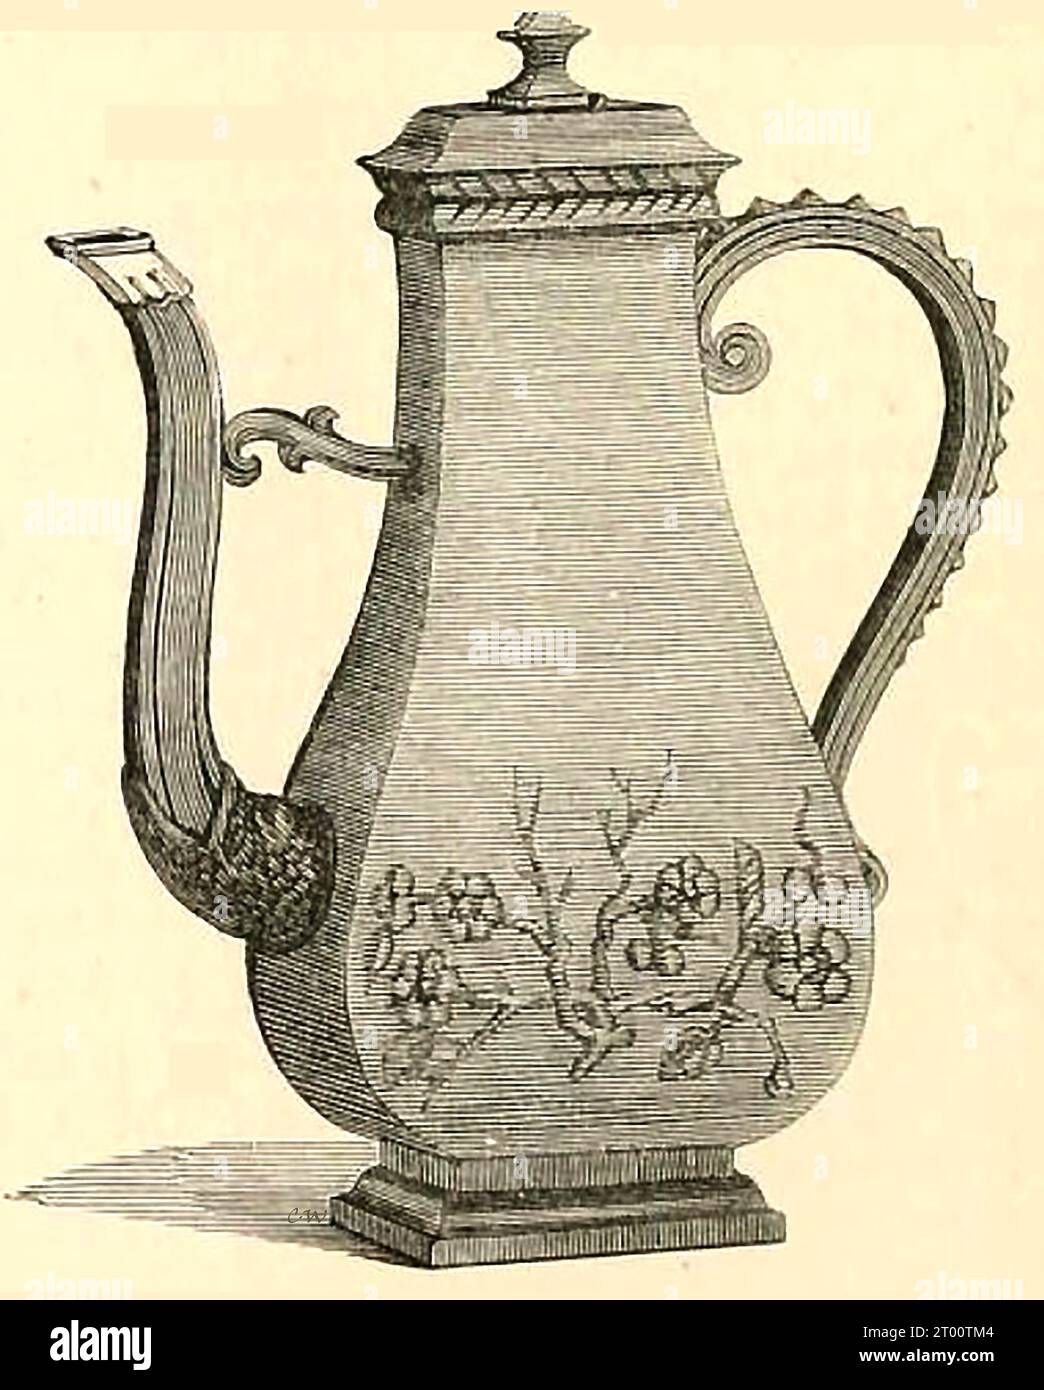 https://c8.alamy.com/comp/2T00TM4/a-19th-century-engraving-showing-an-example-of-a-bottcher-ware-coffee-pot-ein-stich-aus-dem-19-jahrhundert-der-ein-beispiel-einer-bottcher-ware-kaffeekanne-zeigt-2T00TM4.jpg